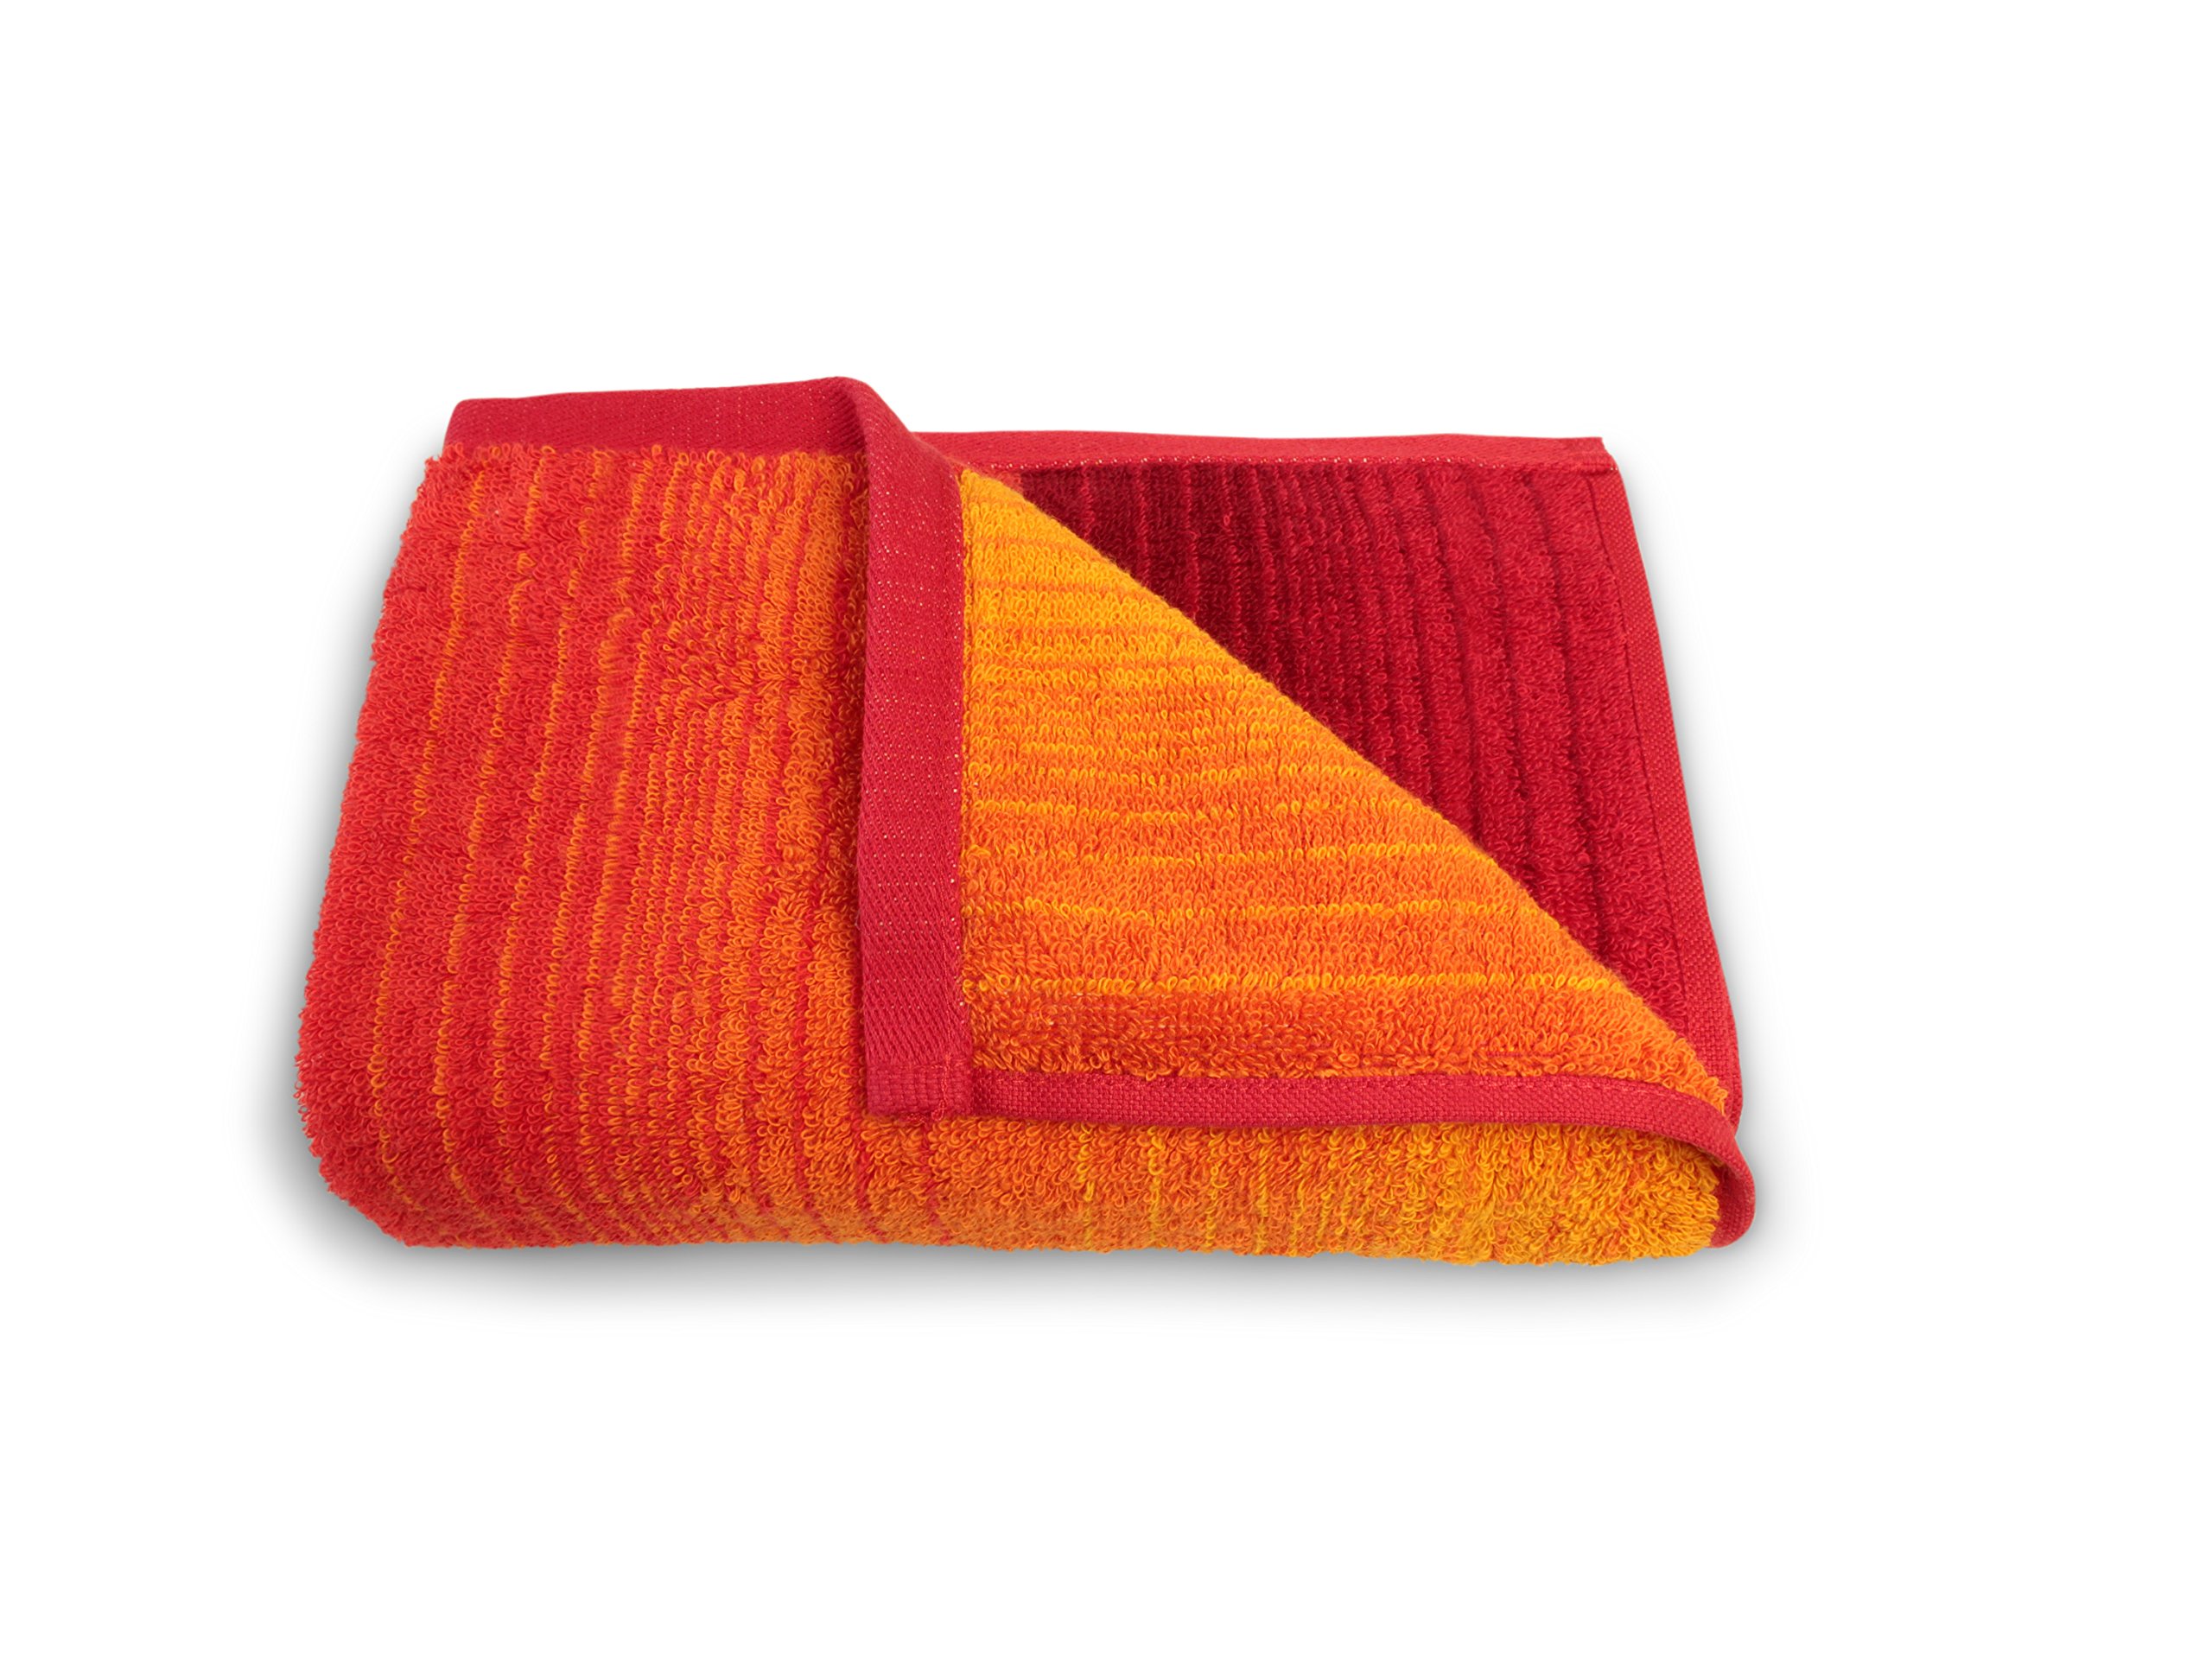 Handtuchserie Colori aus Bio-Baumwolle mit praktischem Kordelaufhänger 545.665, Duschtuch 70 x 140 cm, rot